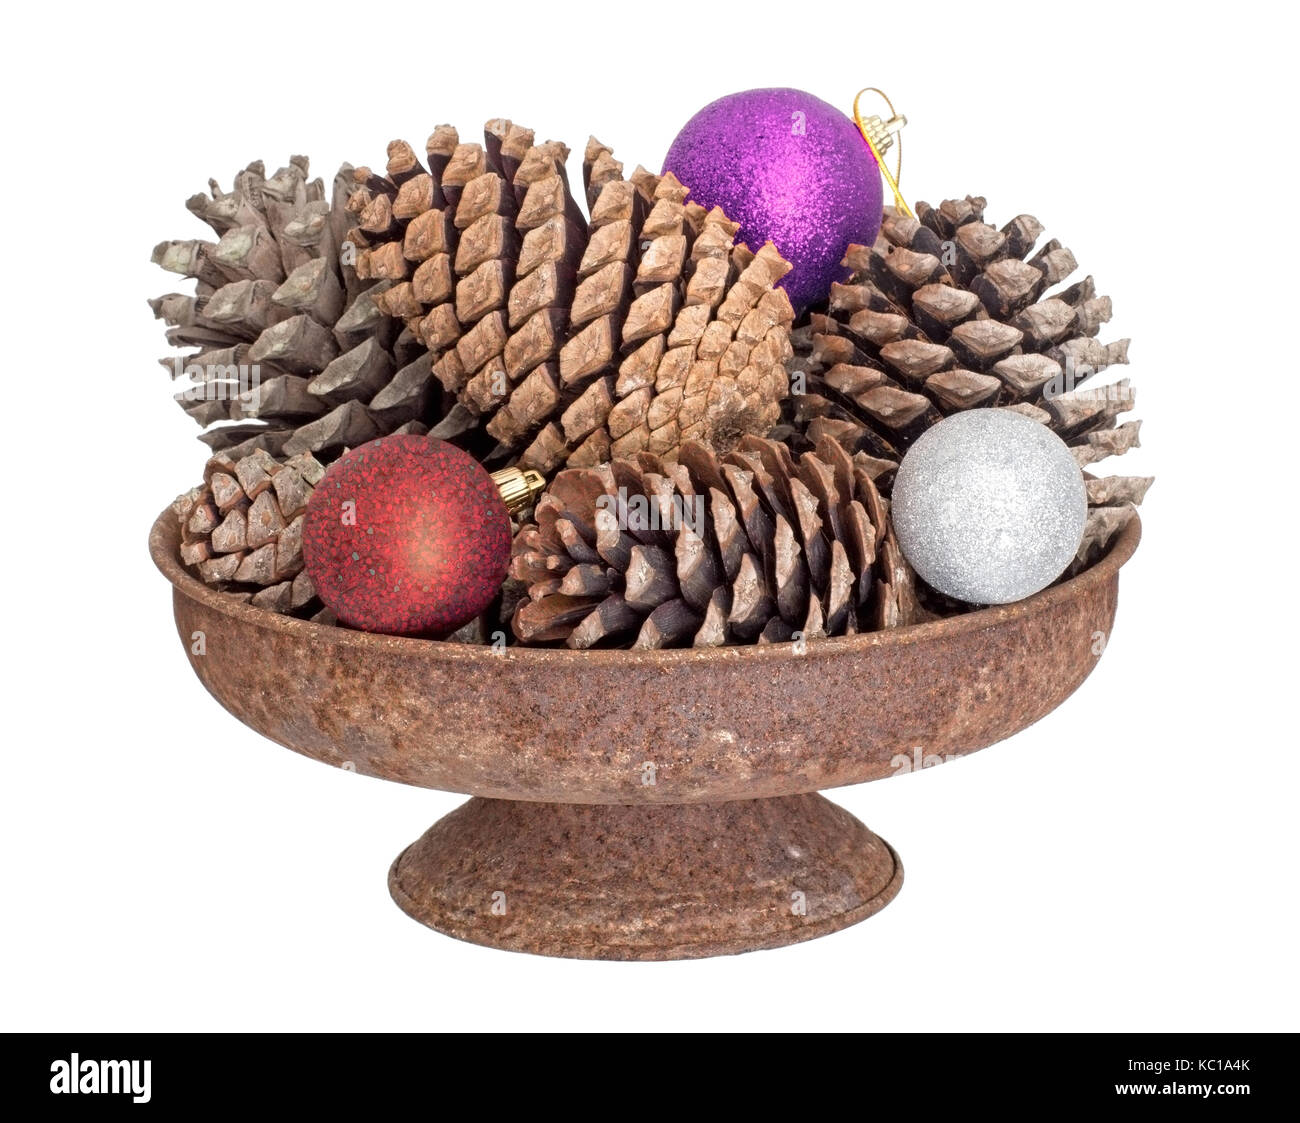 Los conos de pino, invierno o temporada festiva decoración. Con chucherías. Foto de stock